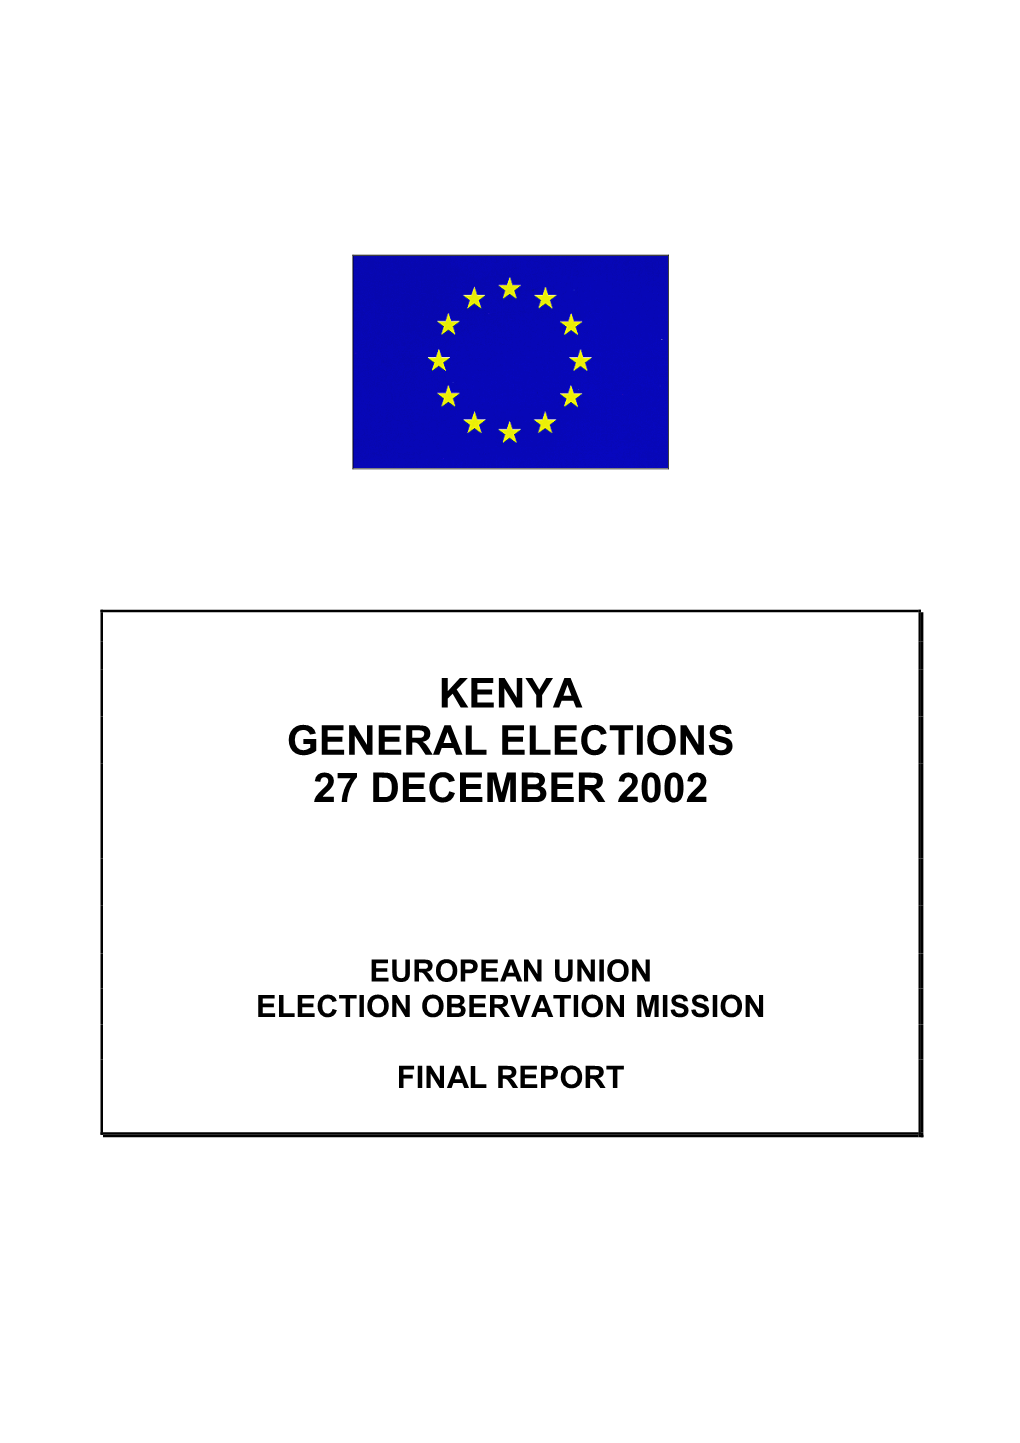 Kenya: Final EU Observation Report 2002 General Elections